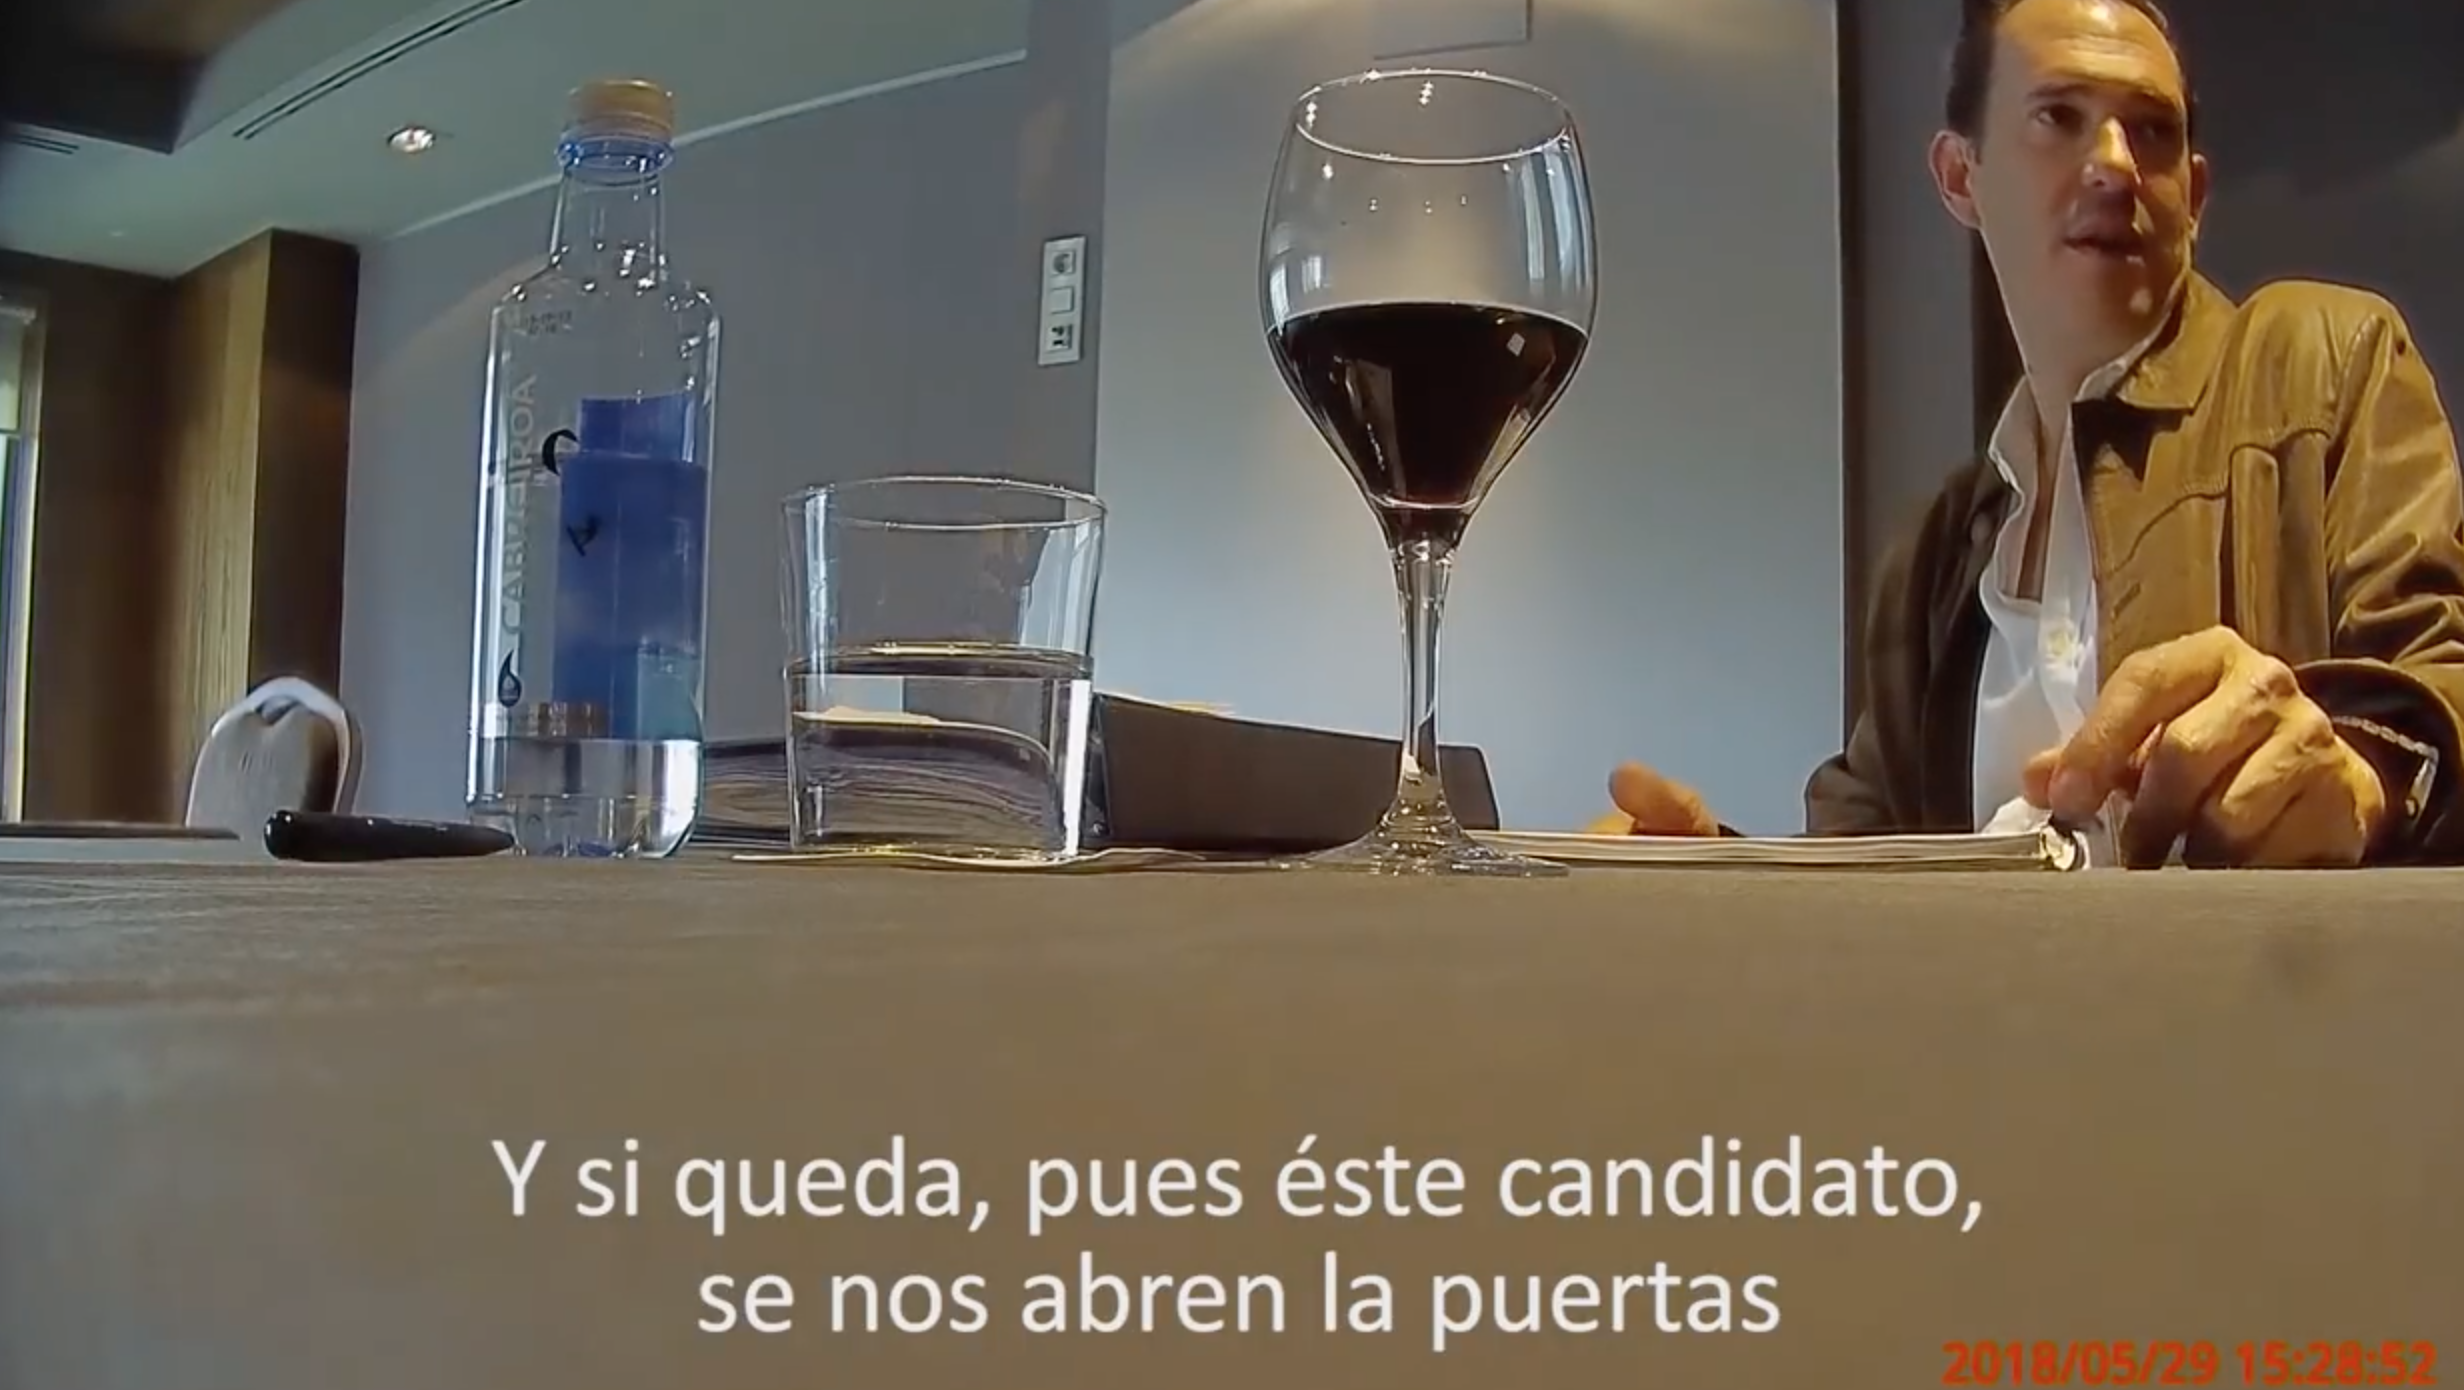 Filtran video que involucra a Ricardo Anaya en operaciones de lavado de dinero